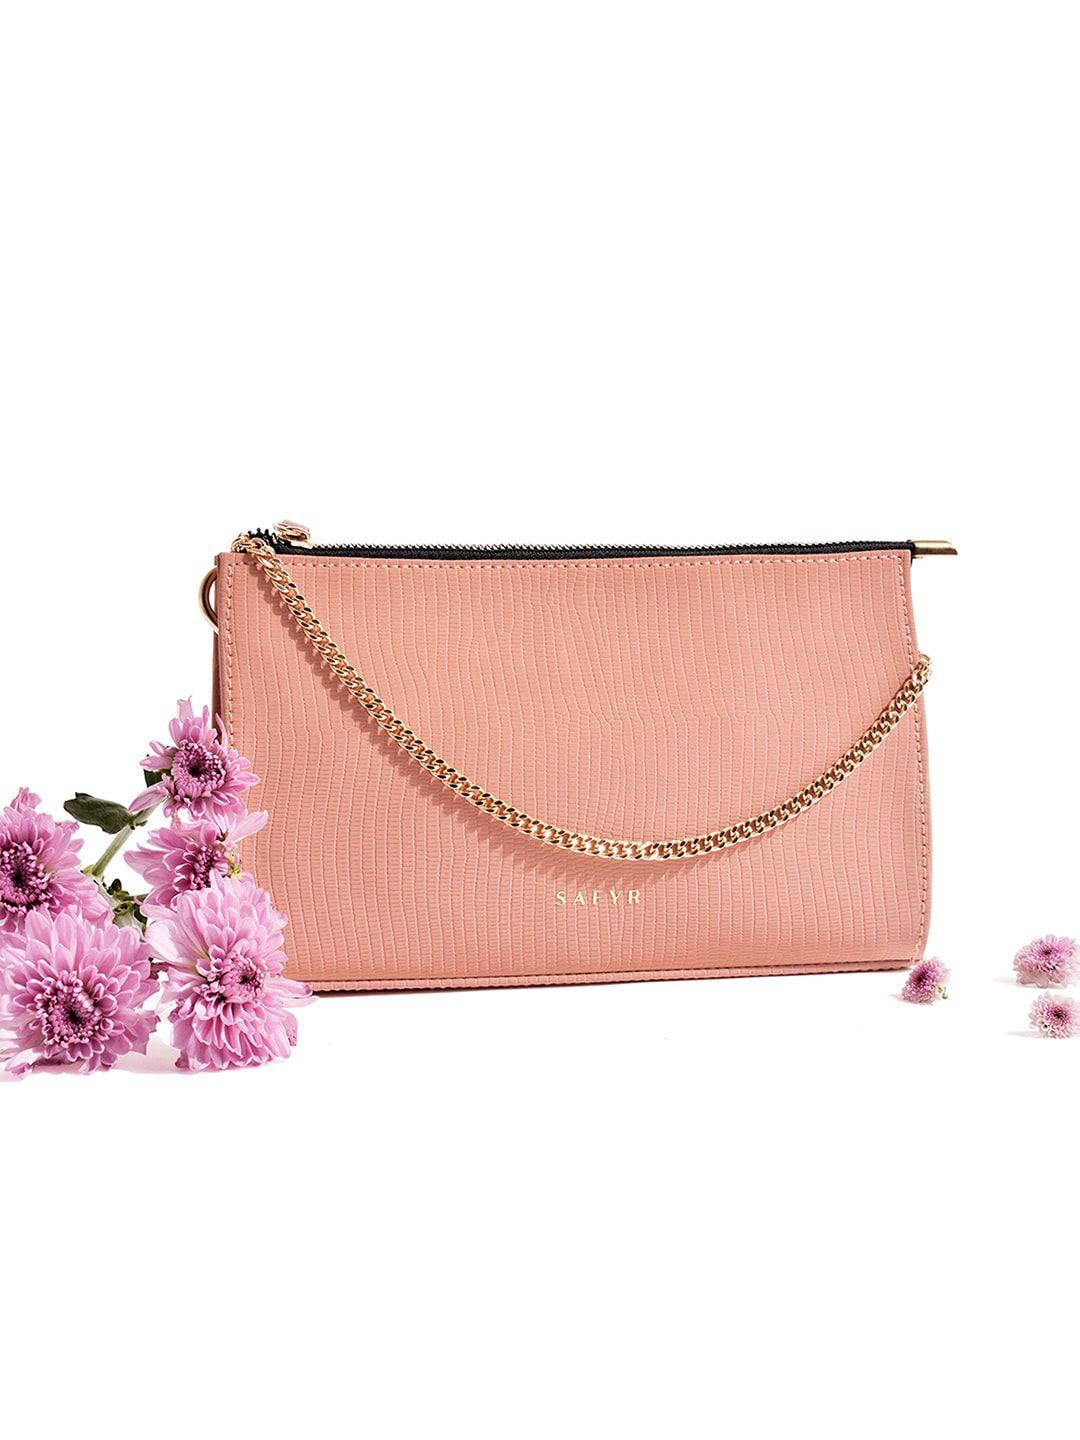 safyr pink textured pu structured sling bag